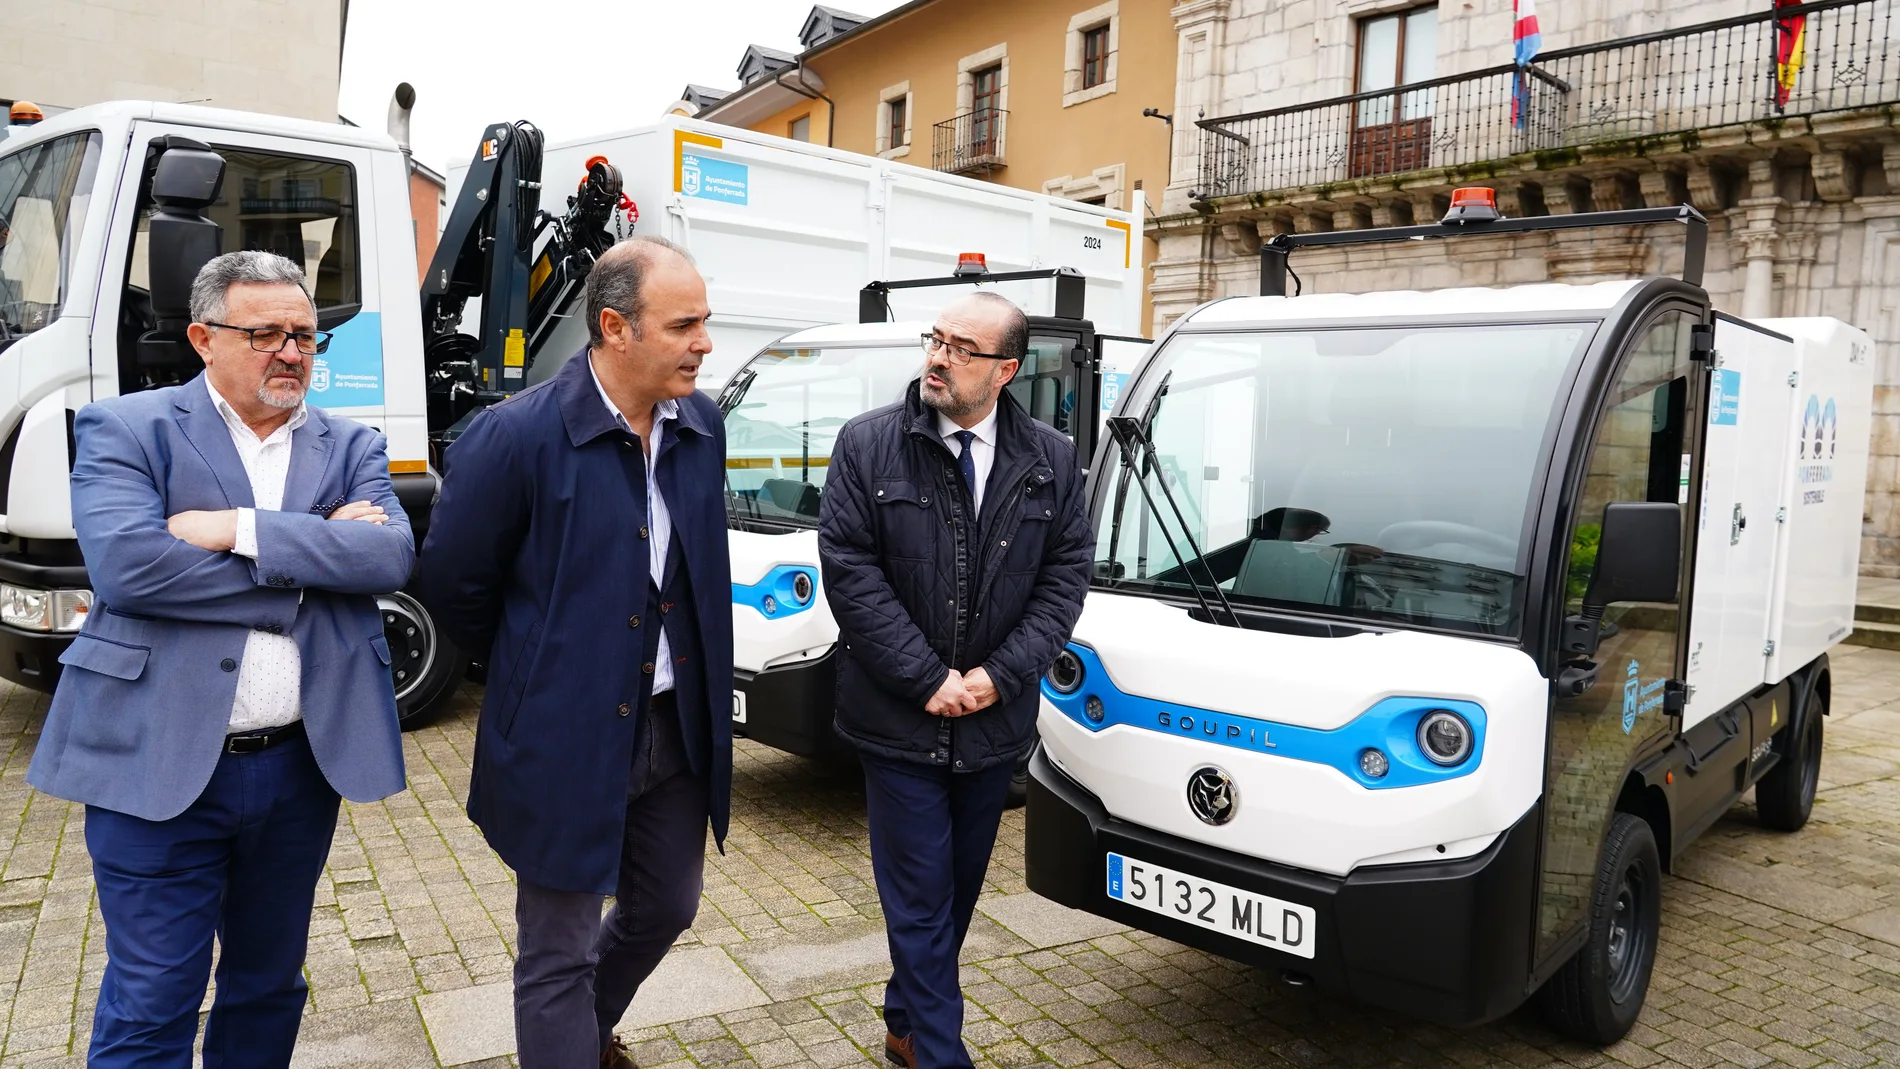 El alcalde de Ponferrada, Marco Moral, presenta los nuevos vehículos de limpieza junto al concejal Carlos Fernández y el responsable de la empresa de limpieza, Vicente Cid